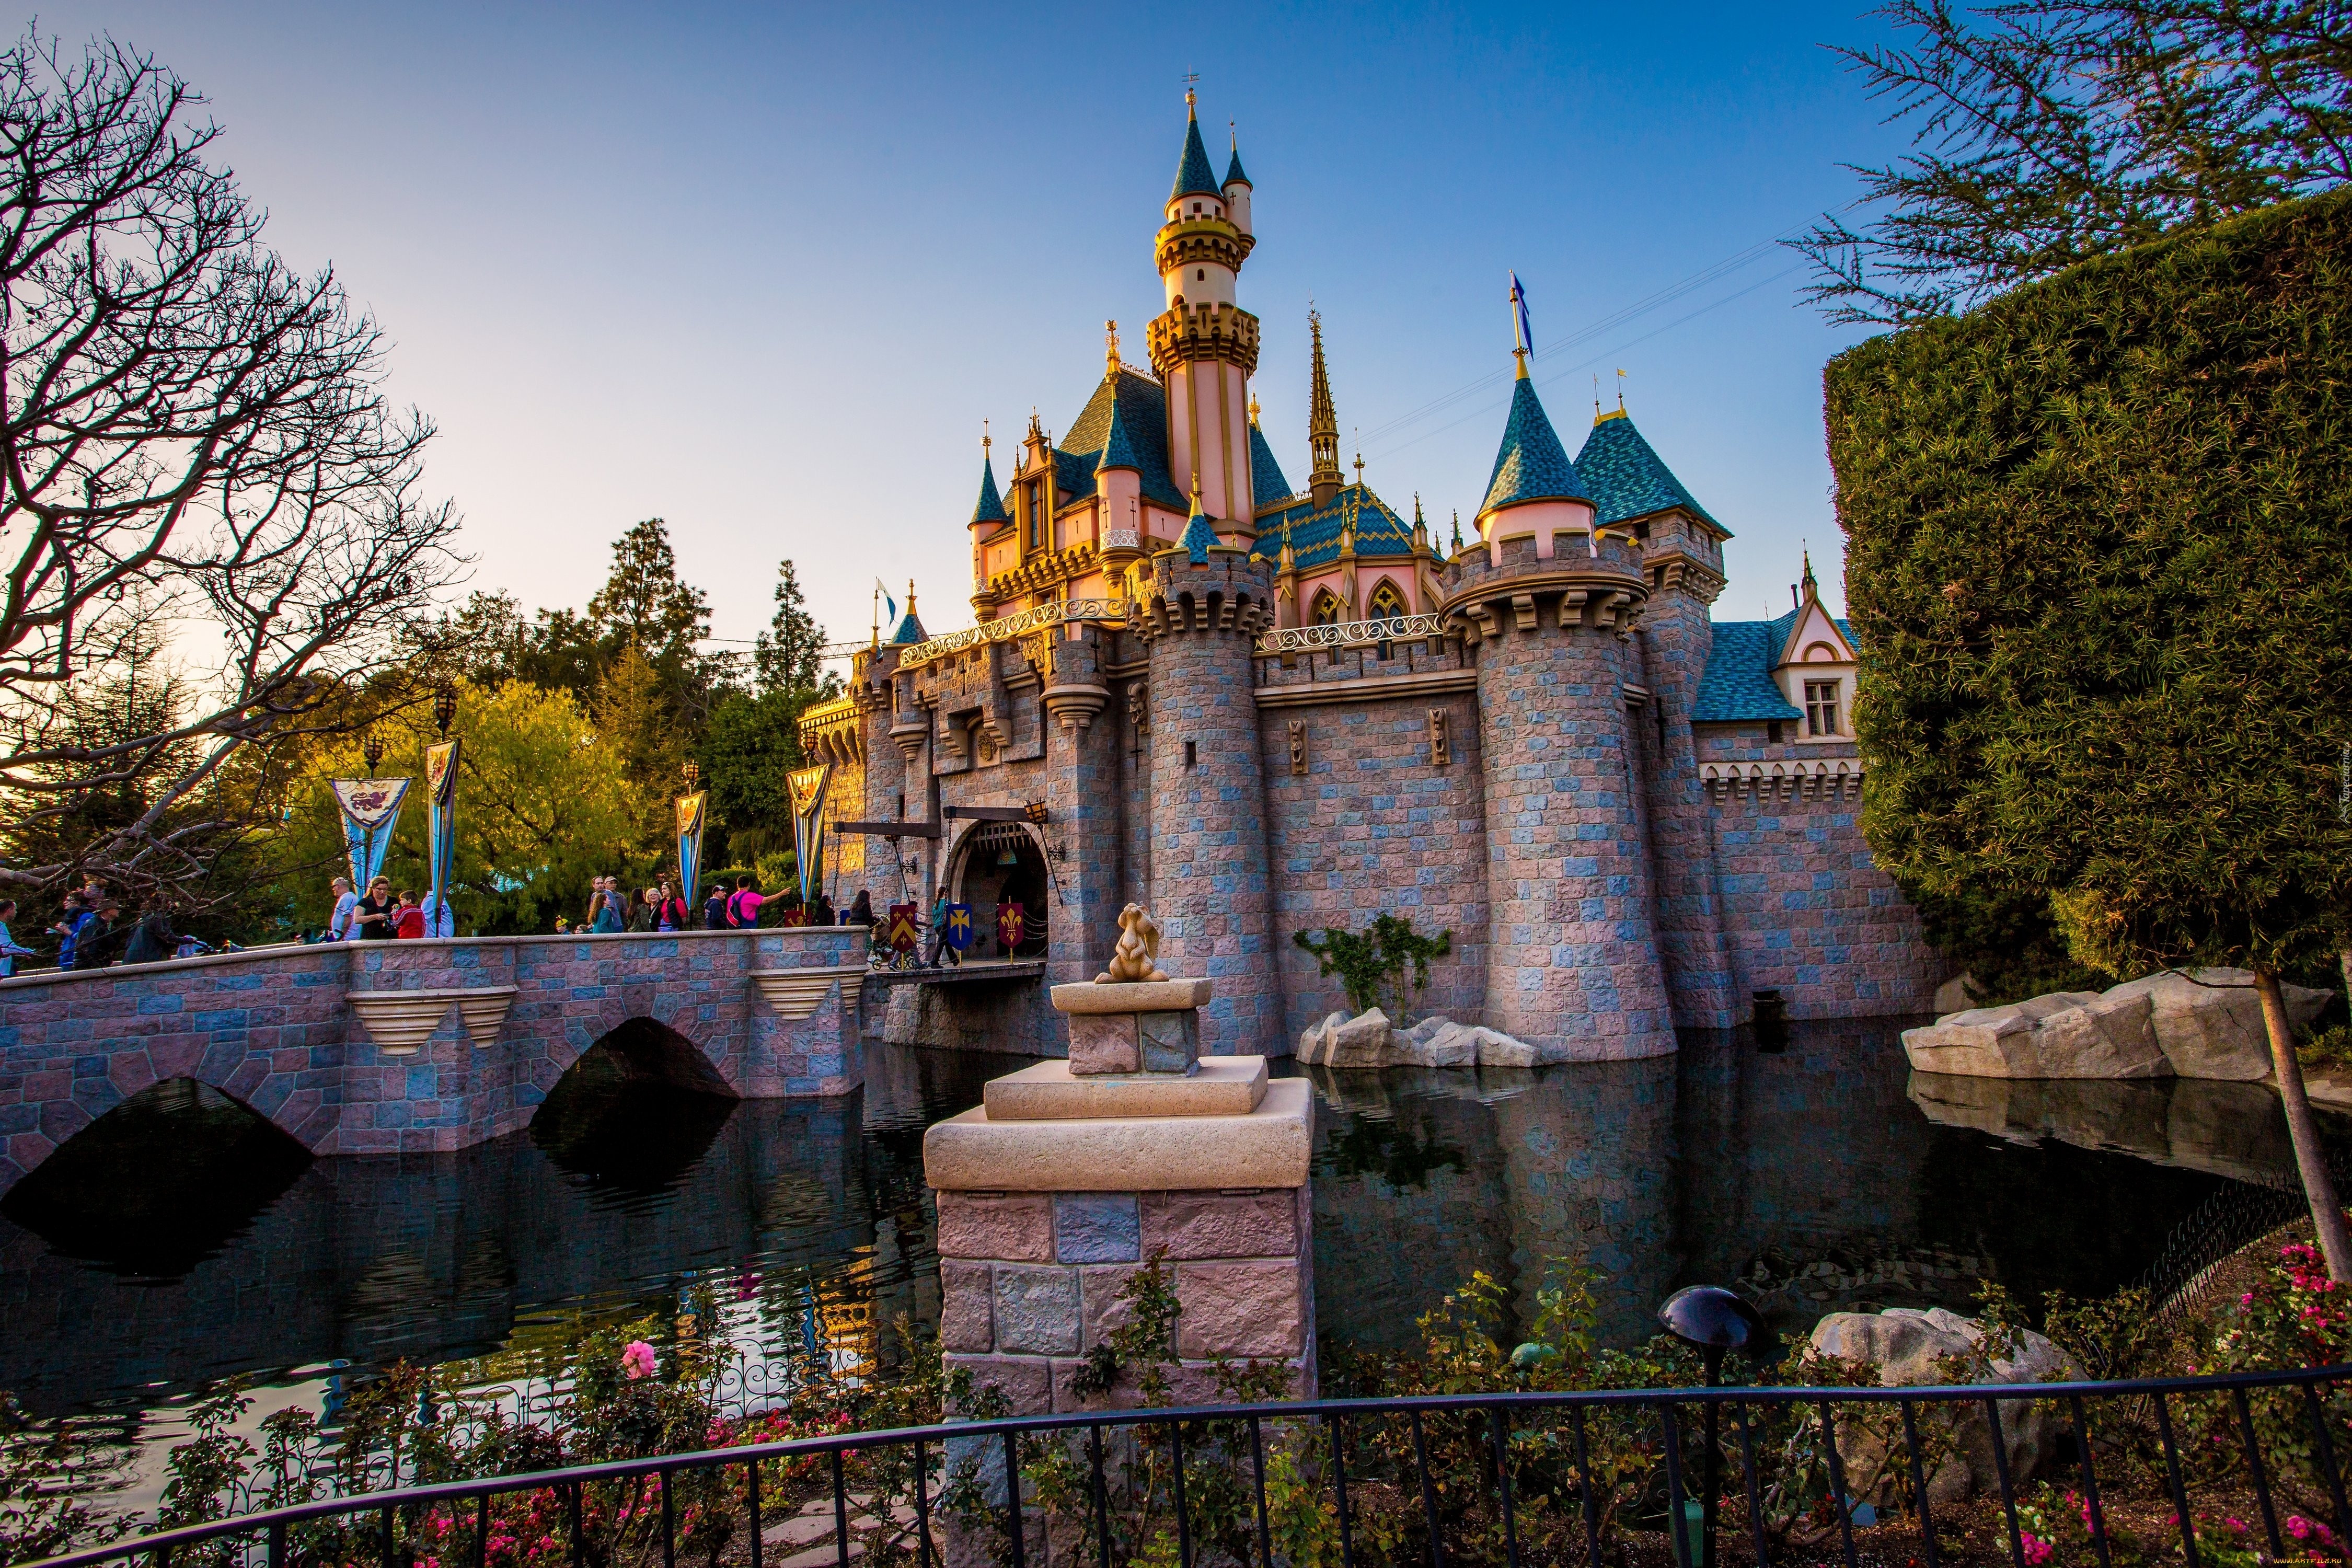 Wesołe miasteczko, Zamek Sleeping Beauty, Disneyland, Anaheim, Kalifornia, Stany Zjednoczone